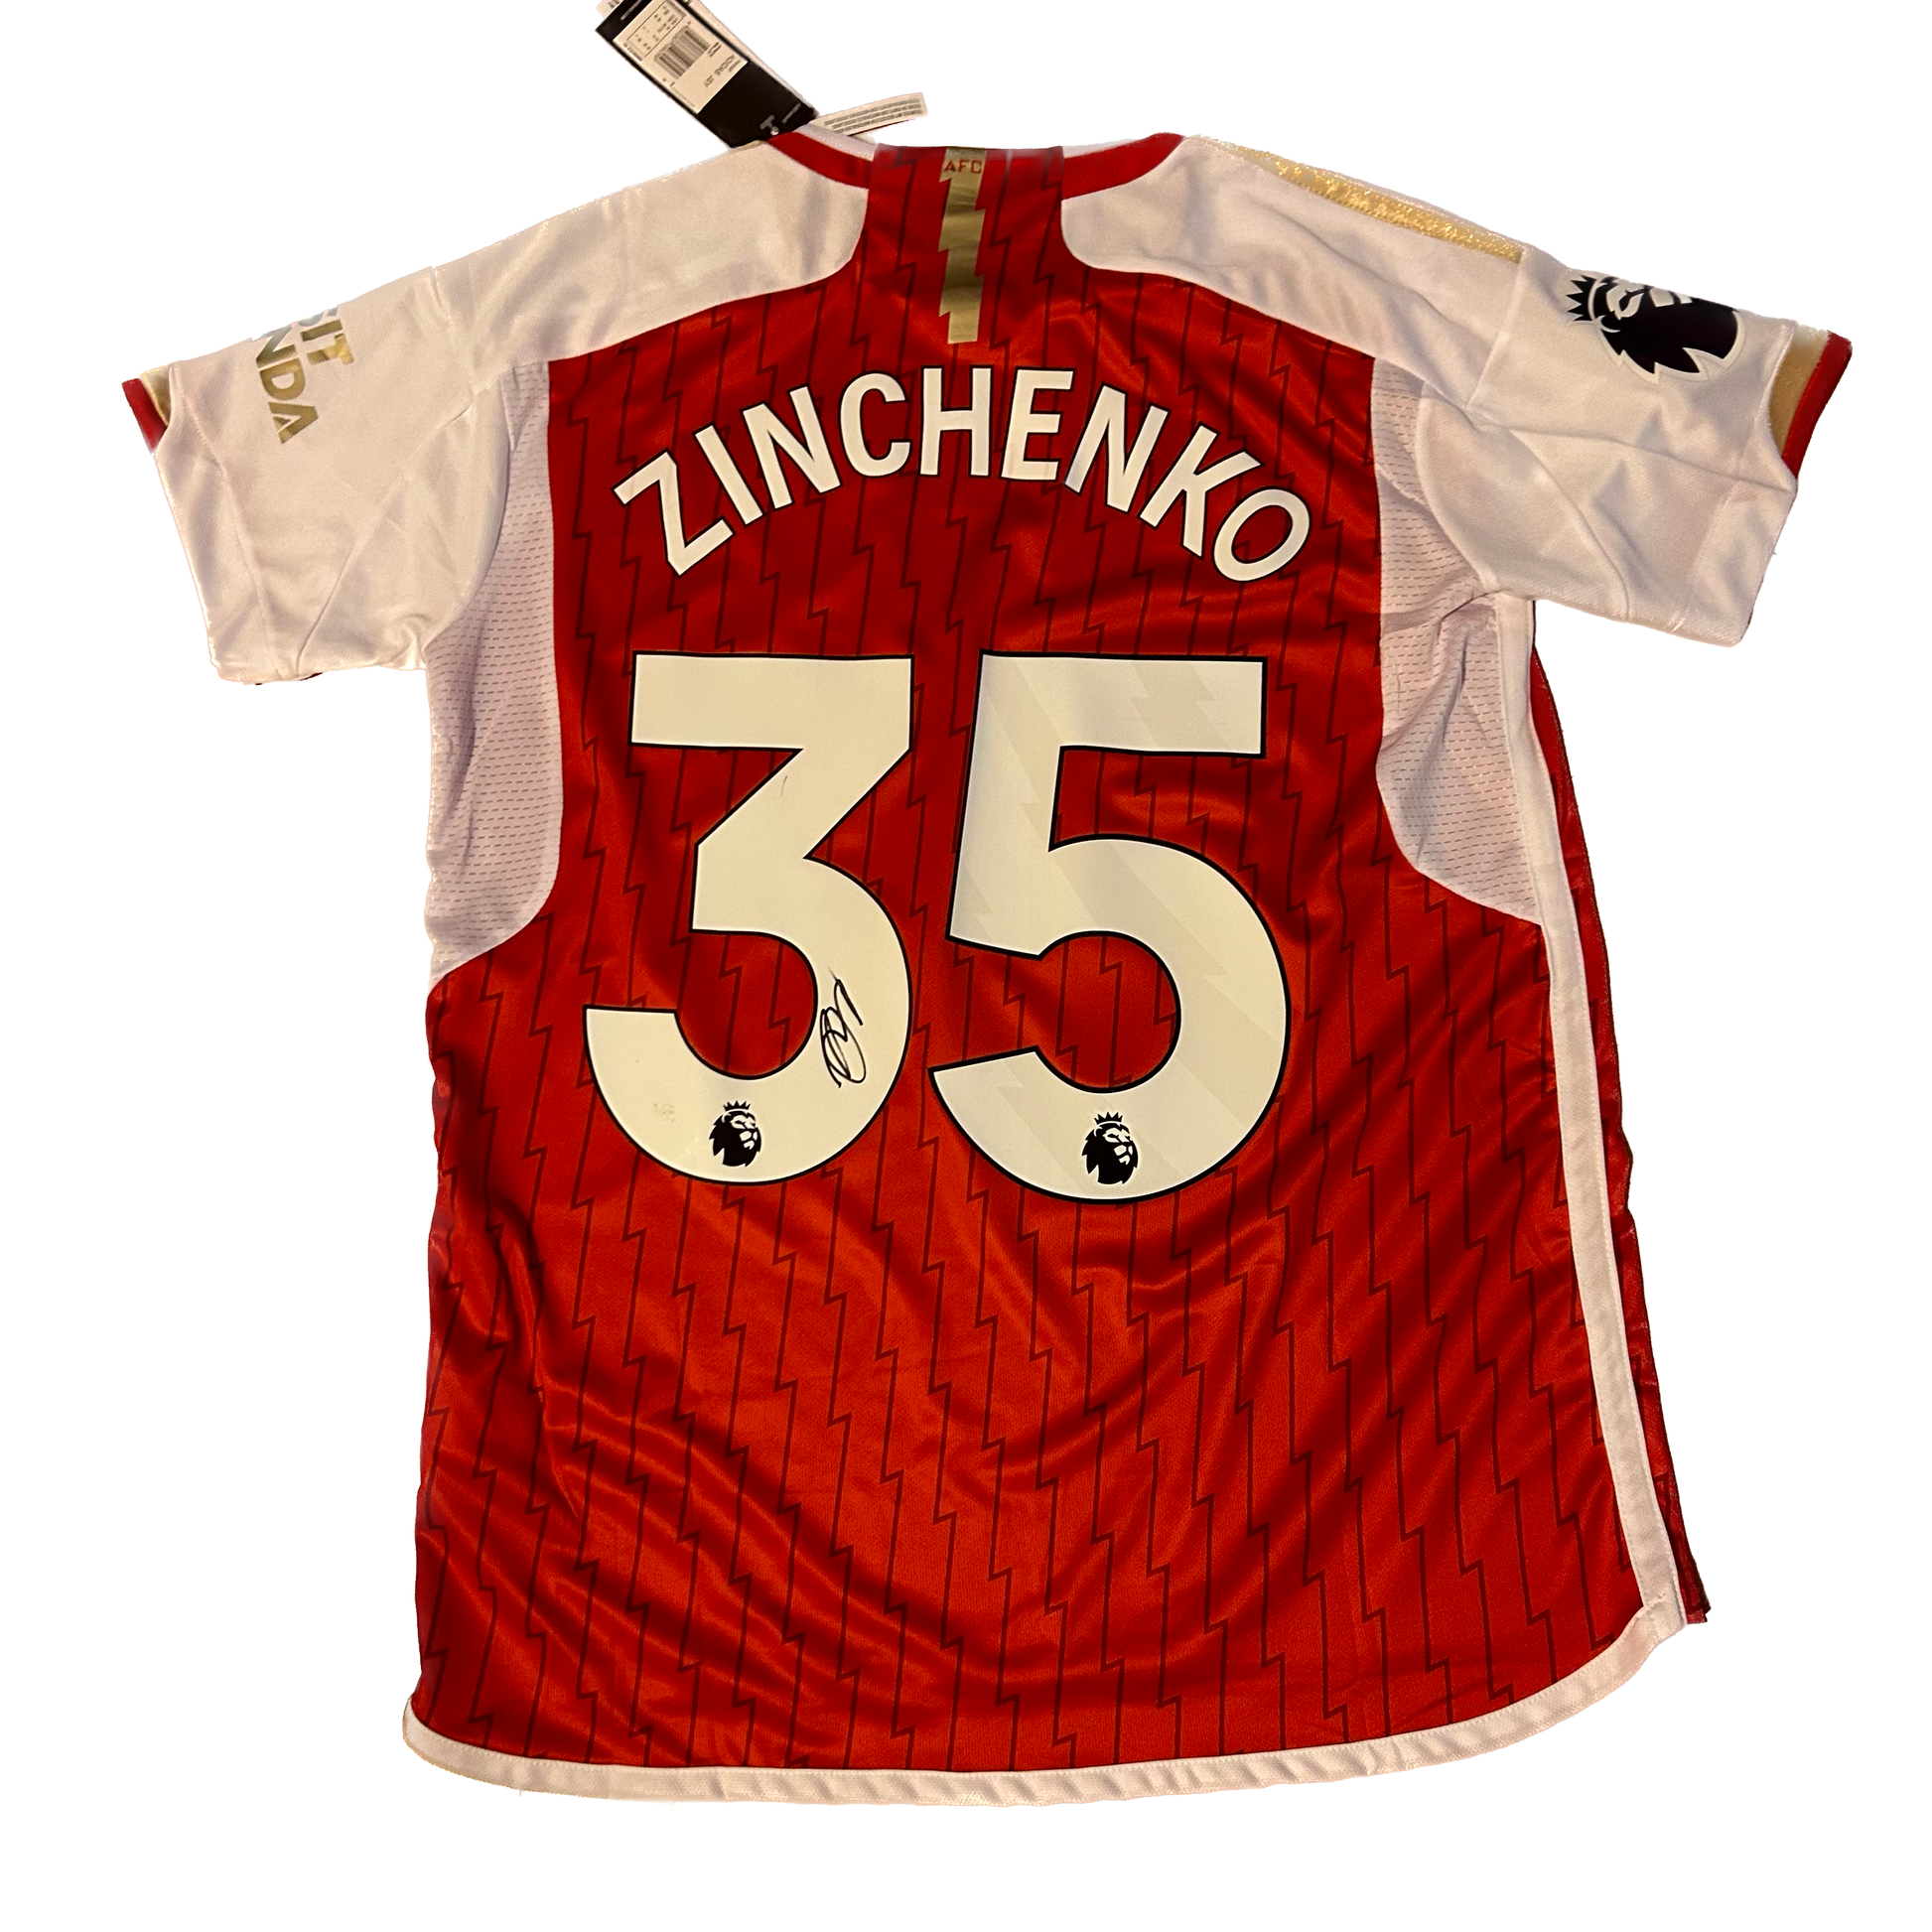 Arsenal FC SoccerStarz Zinchenko  Official Football Merchandise.com